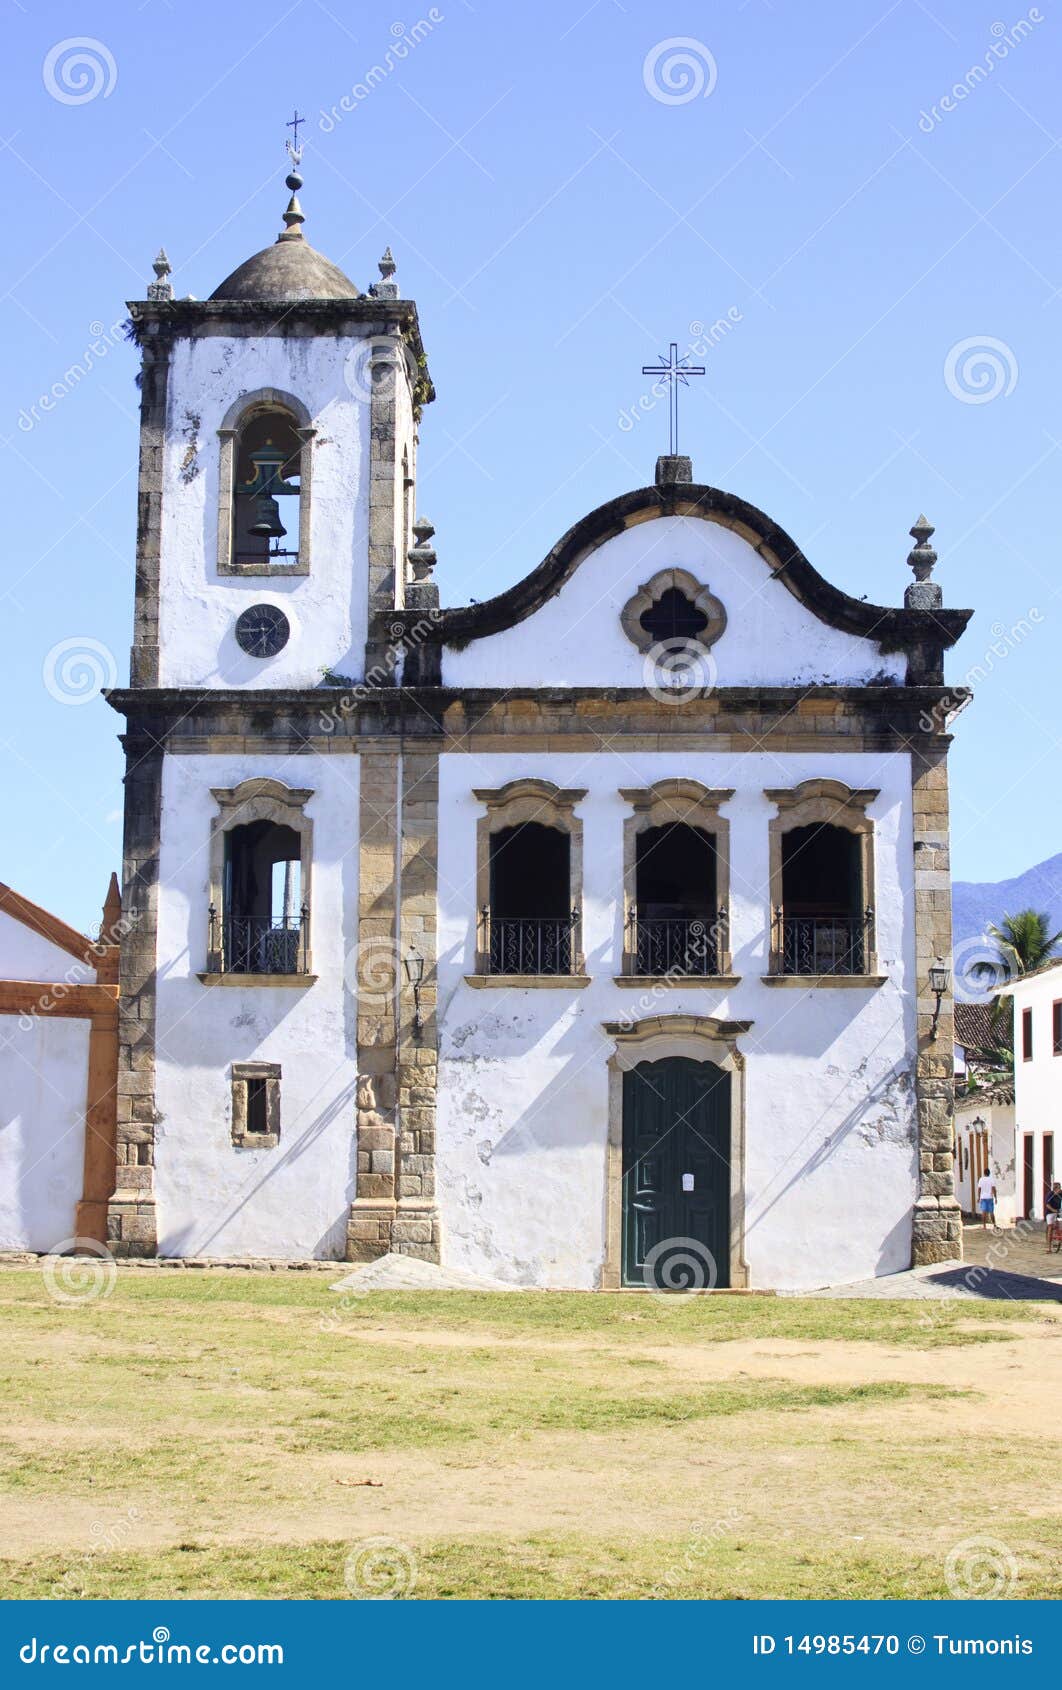 old church in brazil